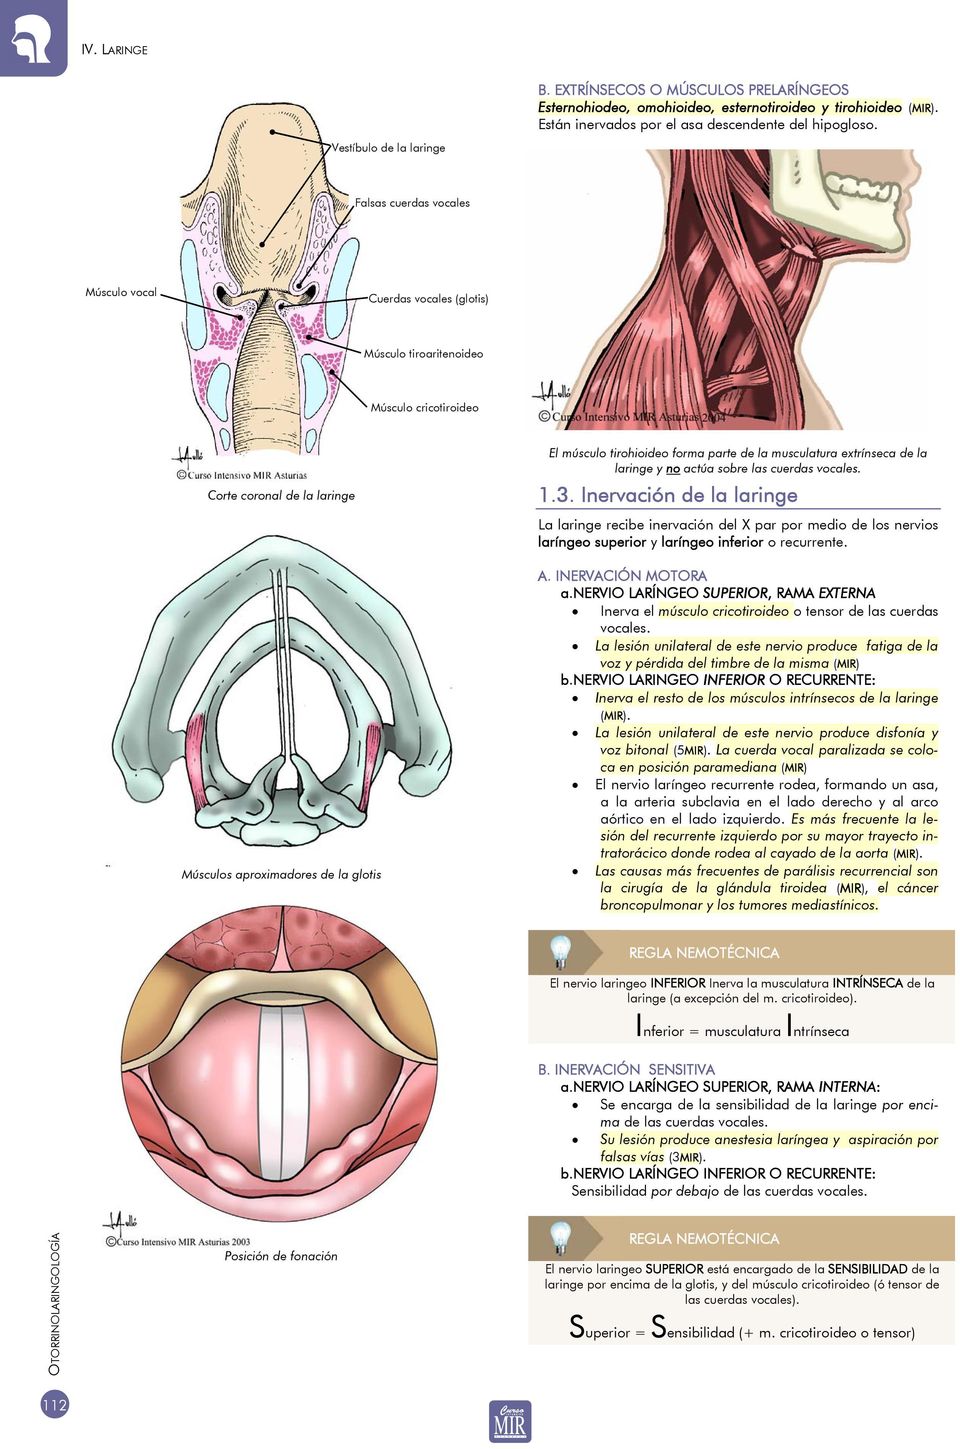 músculo tirohioideo forma parte de la musculatura extrínseca de la laringe y no actúa sobre las cuerdas vocales. 1.3.